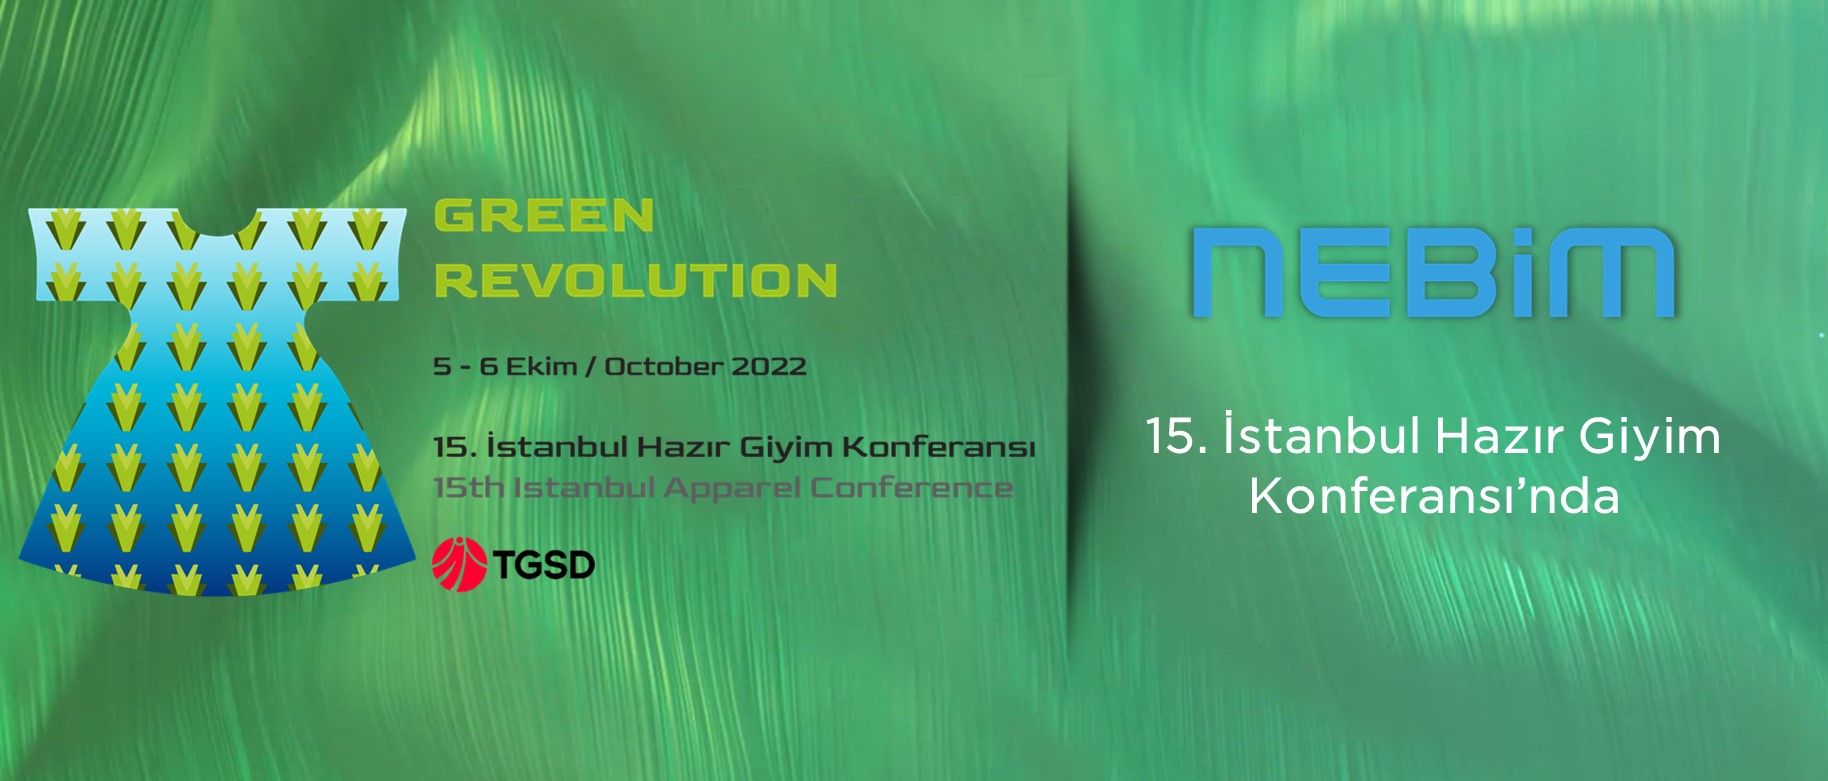 Nebim 5-6 Ekim’de Gerçekleşecek Olan İstanbul 15. Hazır Giyim Konferansı’nda Sponsor Olarak Yerini Aldı